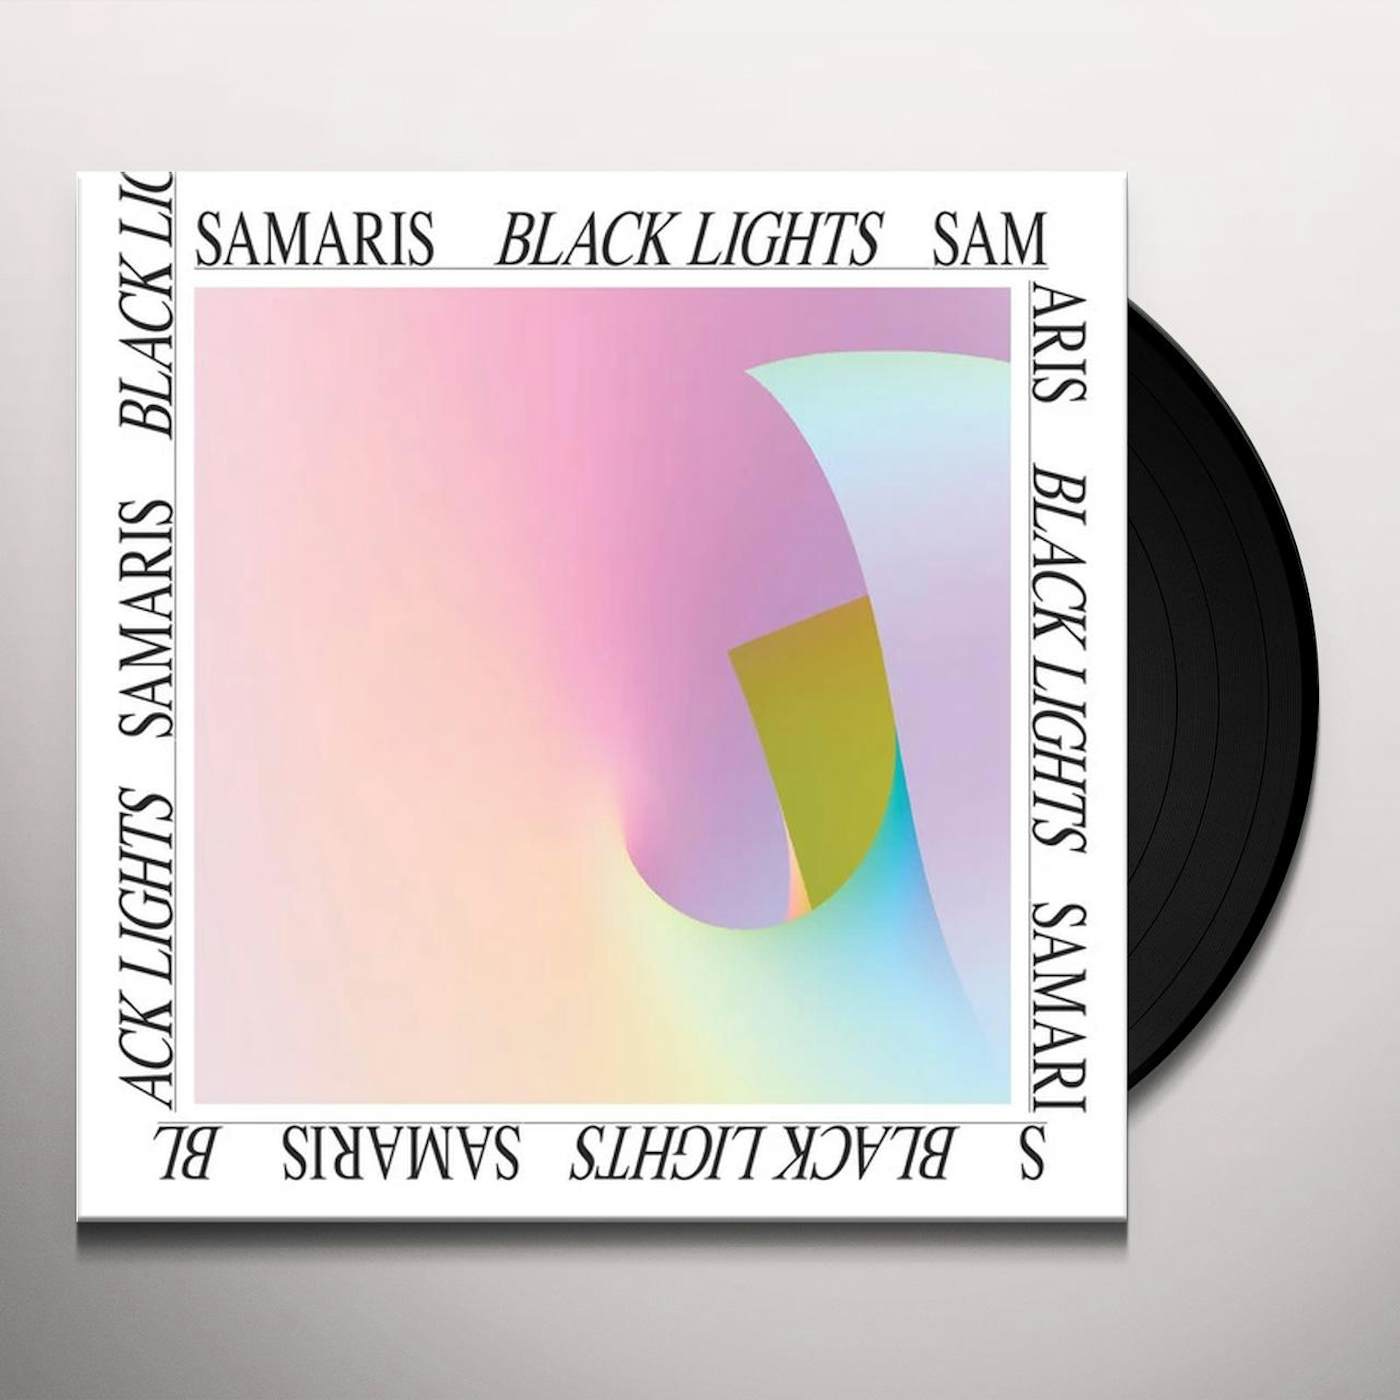 Samaris Black lights Vinyl Record